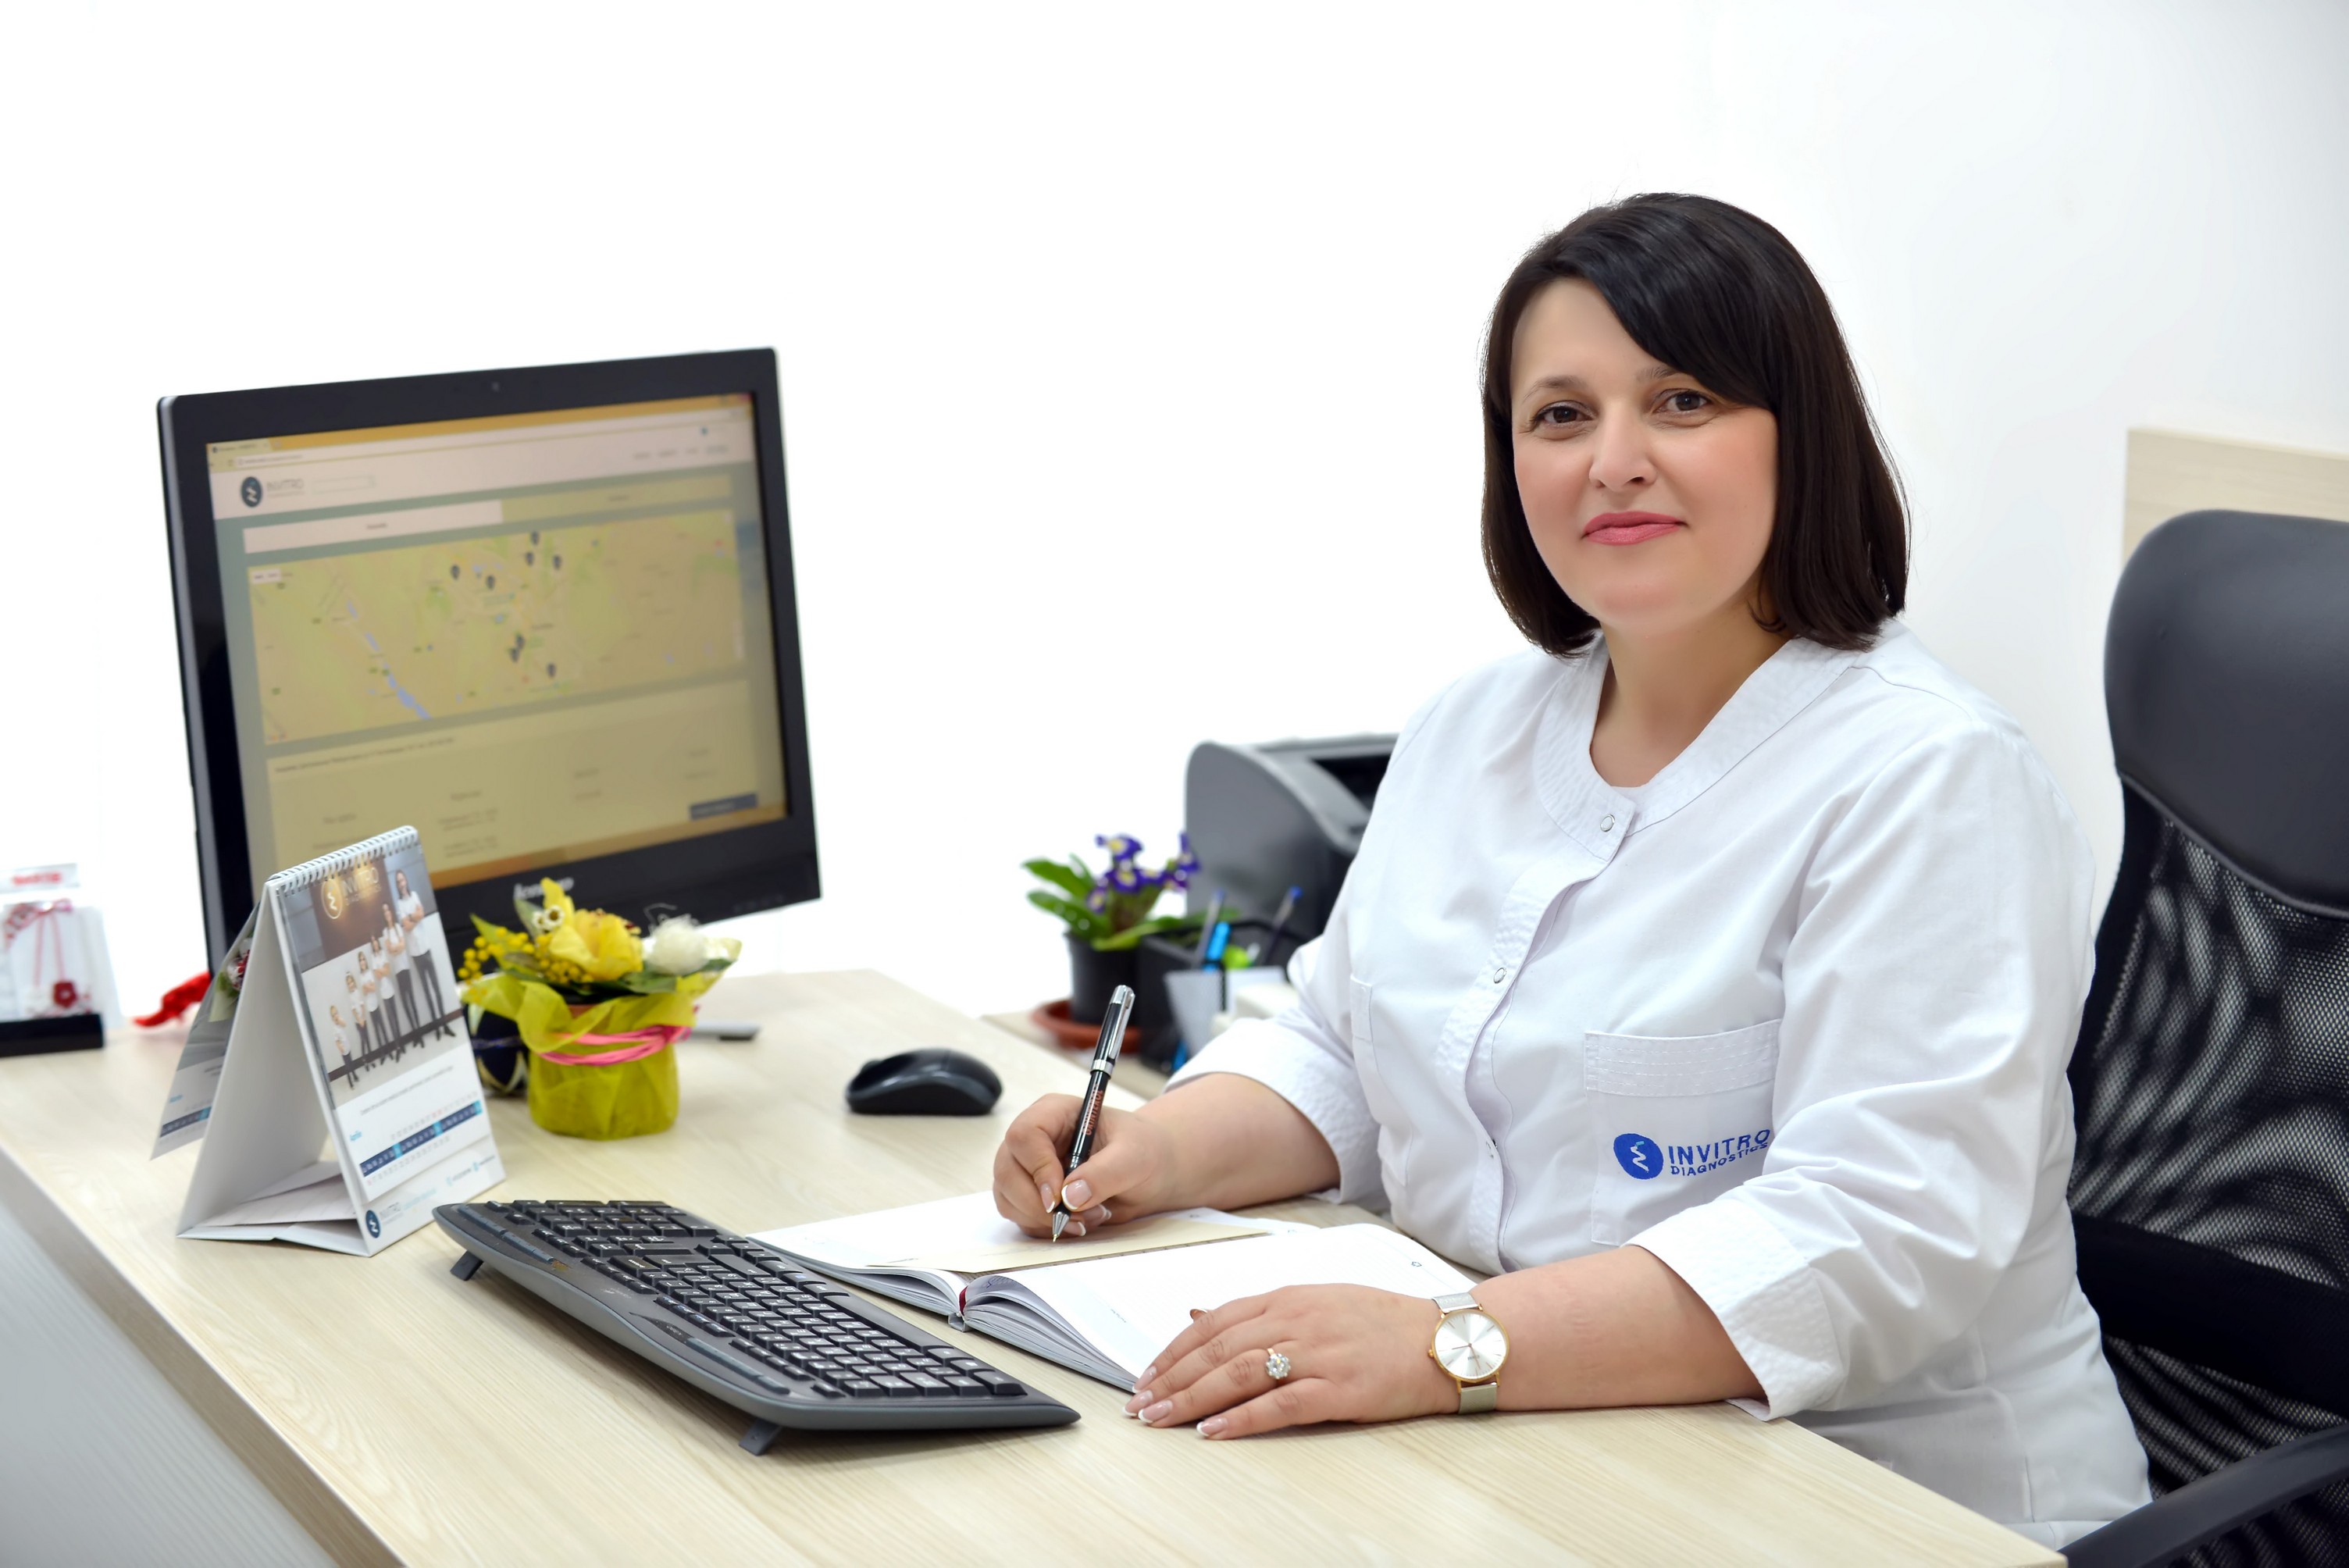 Stela Eftodiev, medic alergolog: Ce teste trebuie să faci pentru a fi sigură că piciul tău nu are alergie?